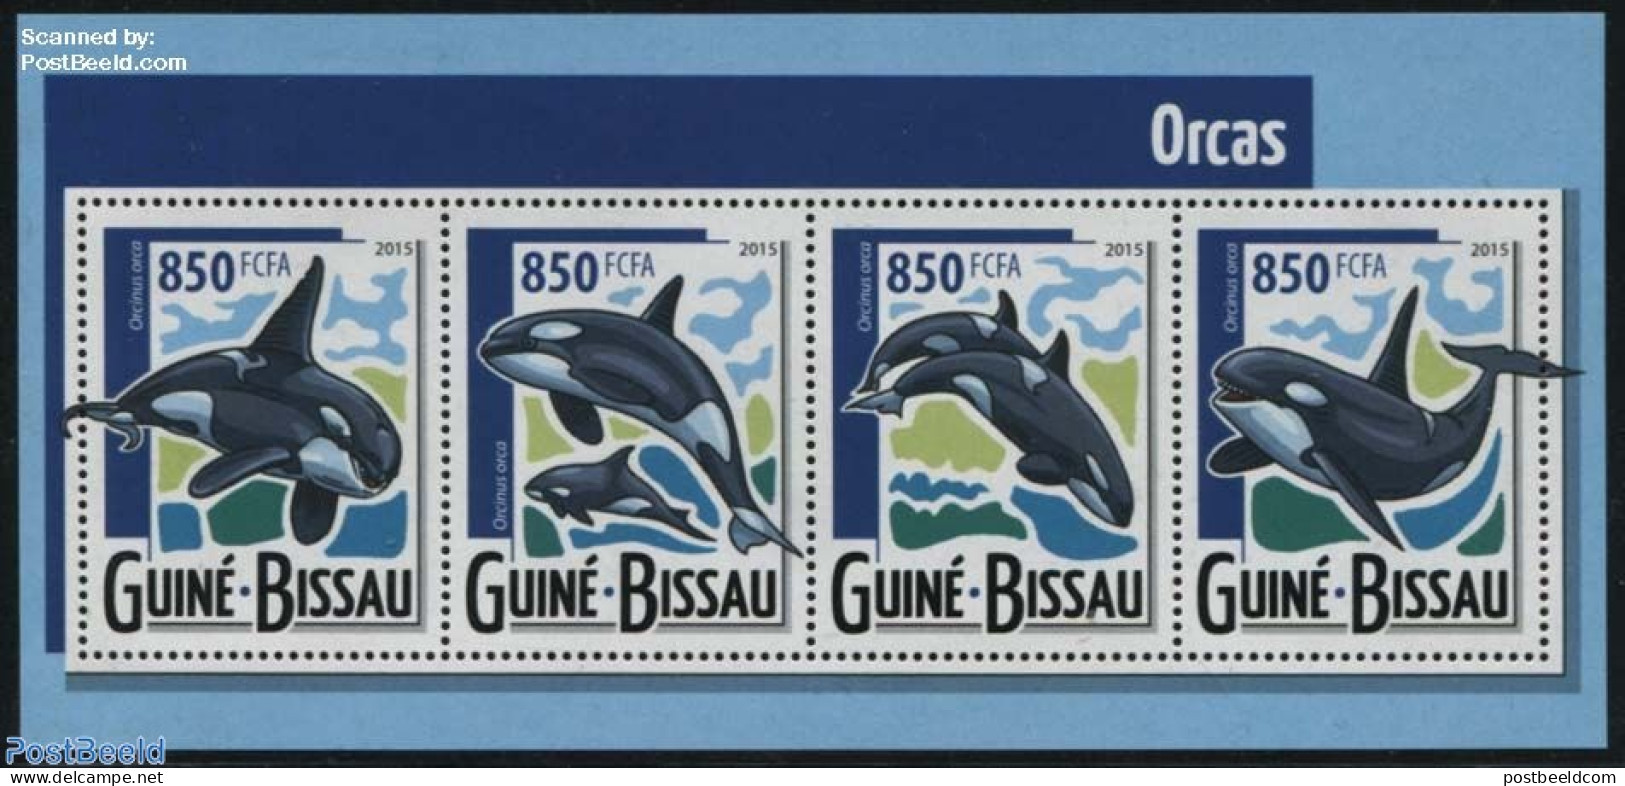 Guinea Bissau 2015 Killer Whales 4v M/s, Mint NH, Nature - Sea Mammals - Guinea-Bissau